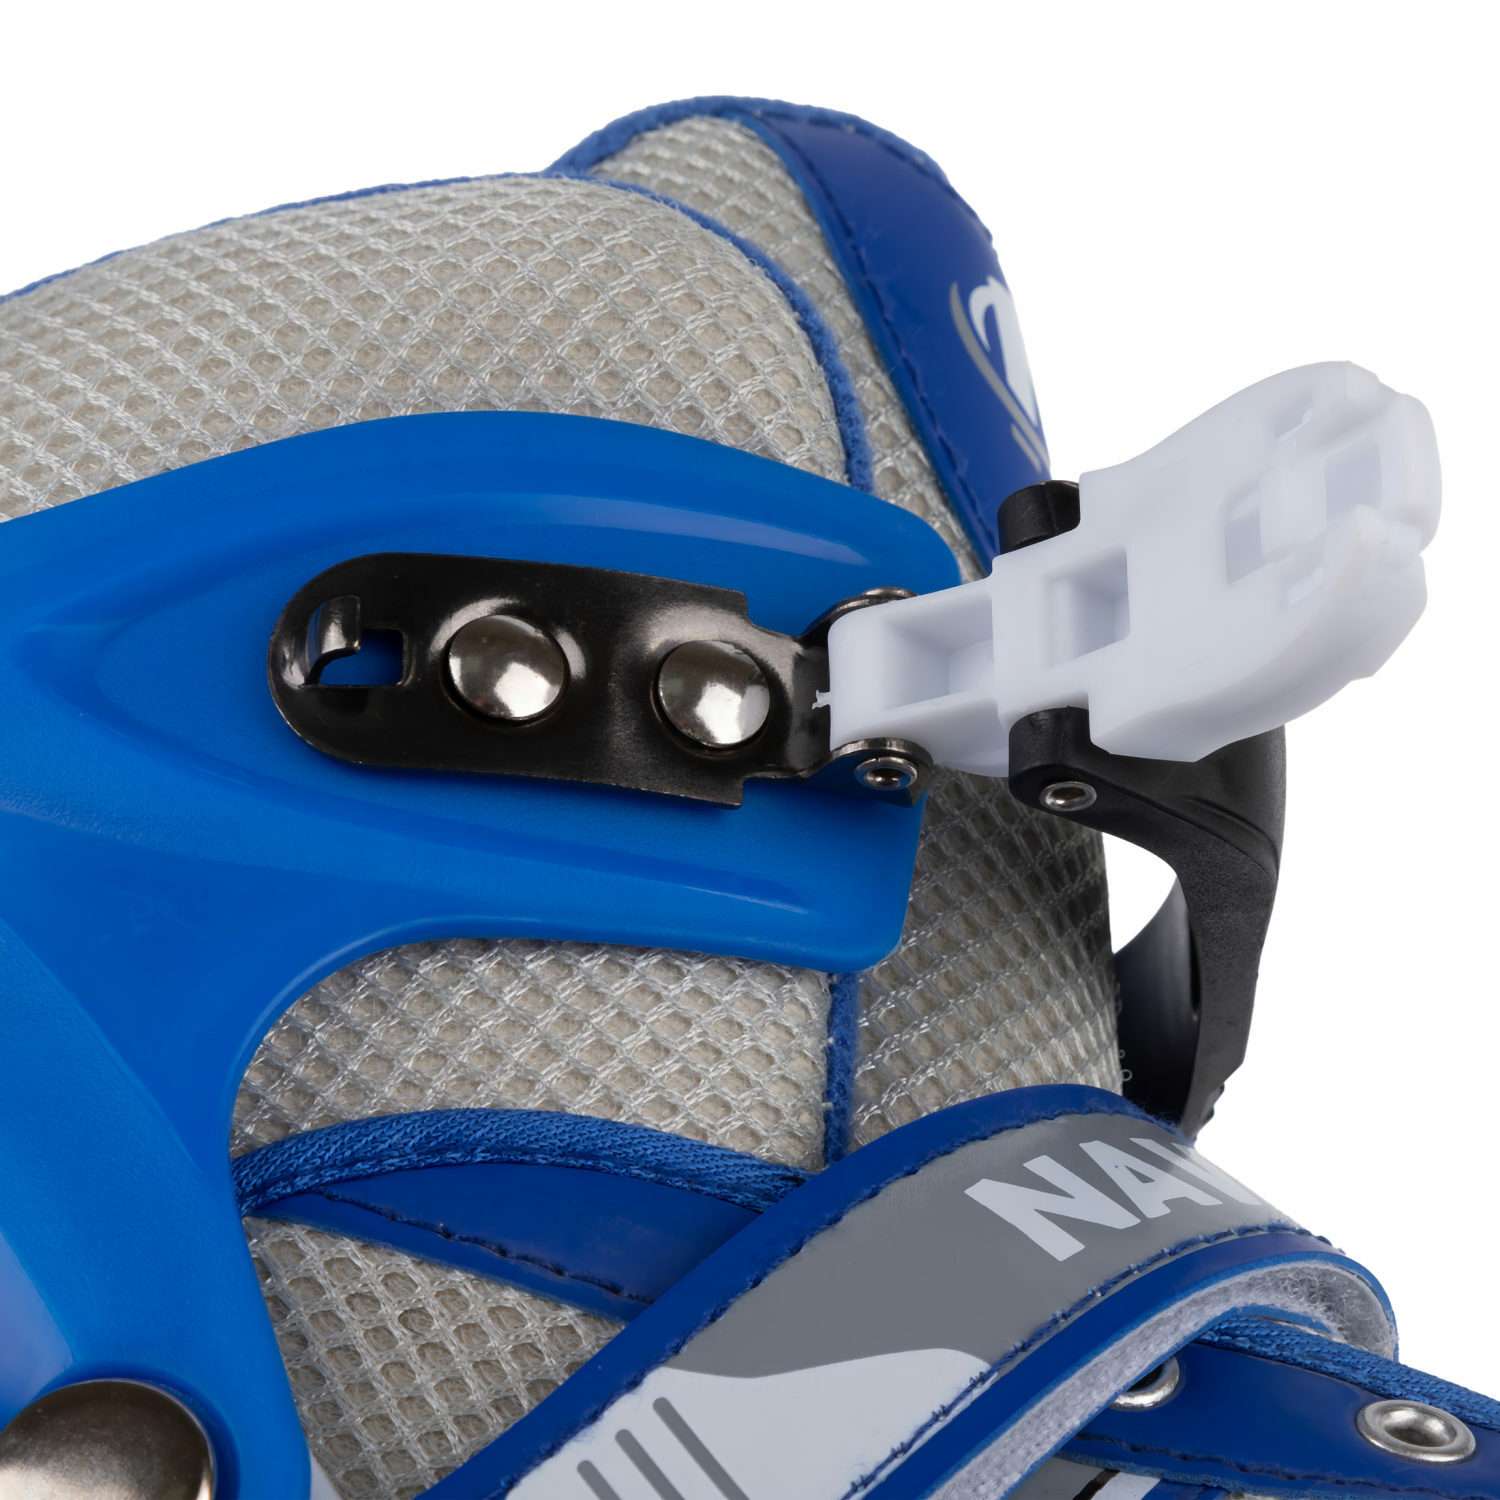 Ролики Navigator детские раздвижные 30 - 33 размер с защитой и шлемом синий - фото 13